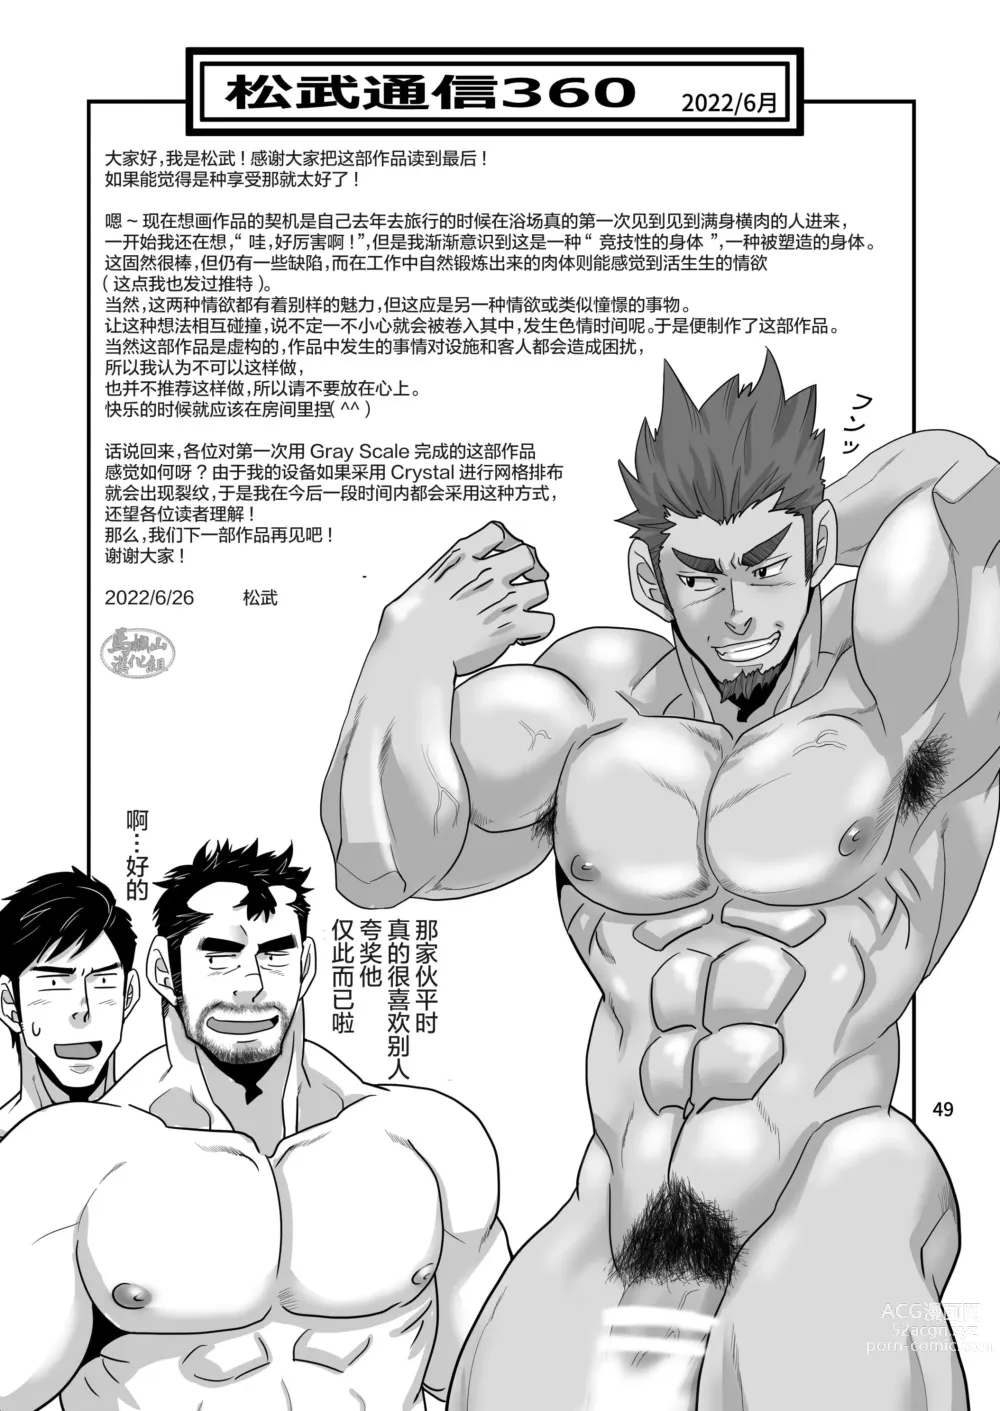 Page 49 of manga 松武互悦同衆!!_旅の恥はヌキすて